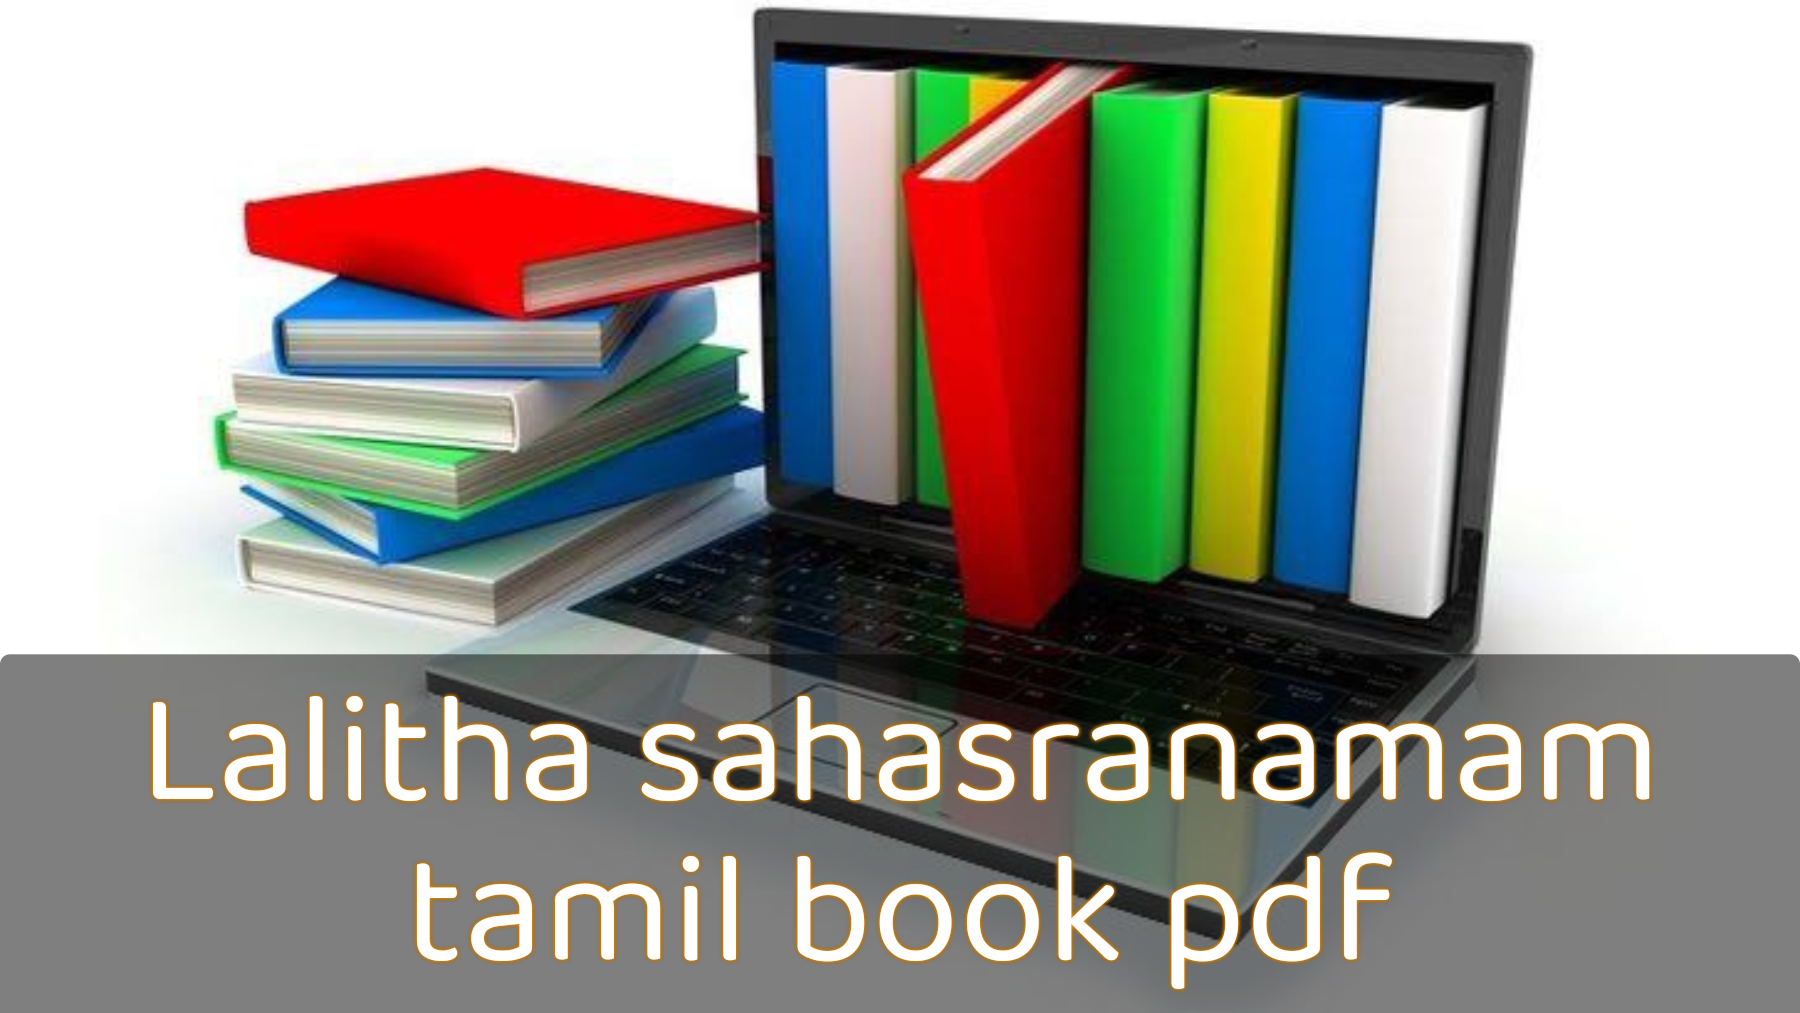 Lalitha sahasranamam tamil book pdf, Lalitha sahasranamam tamil book, Lalitha sahasranamam, Lalitha sahasranamam tamil